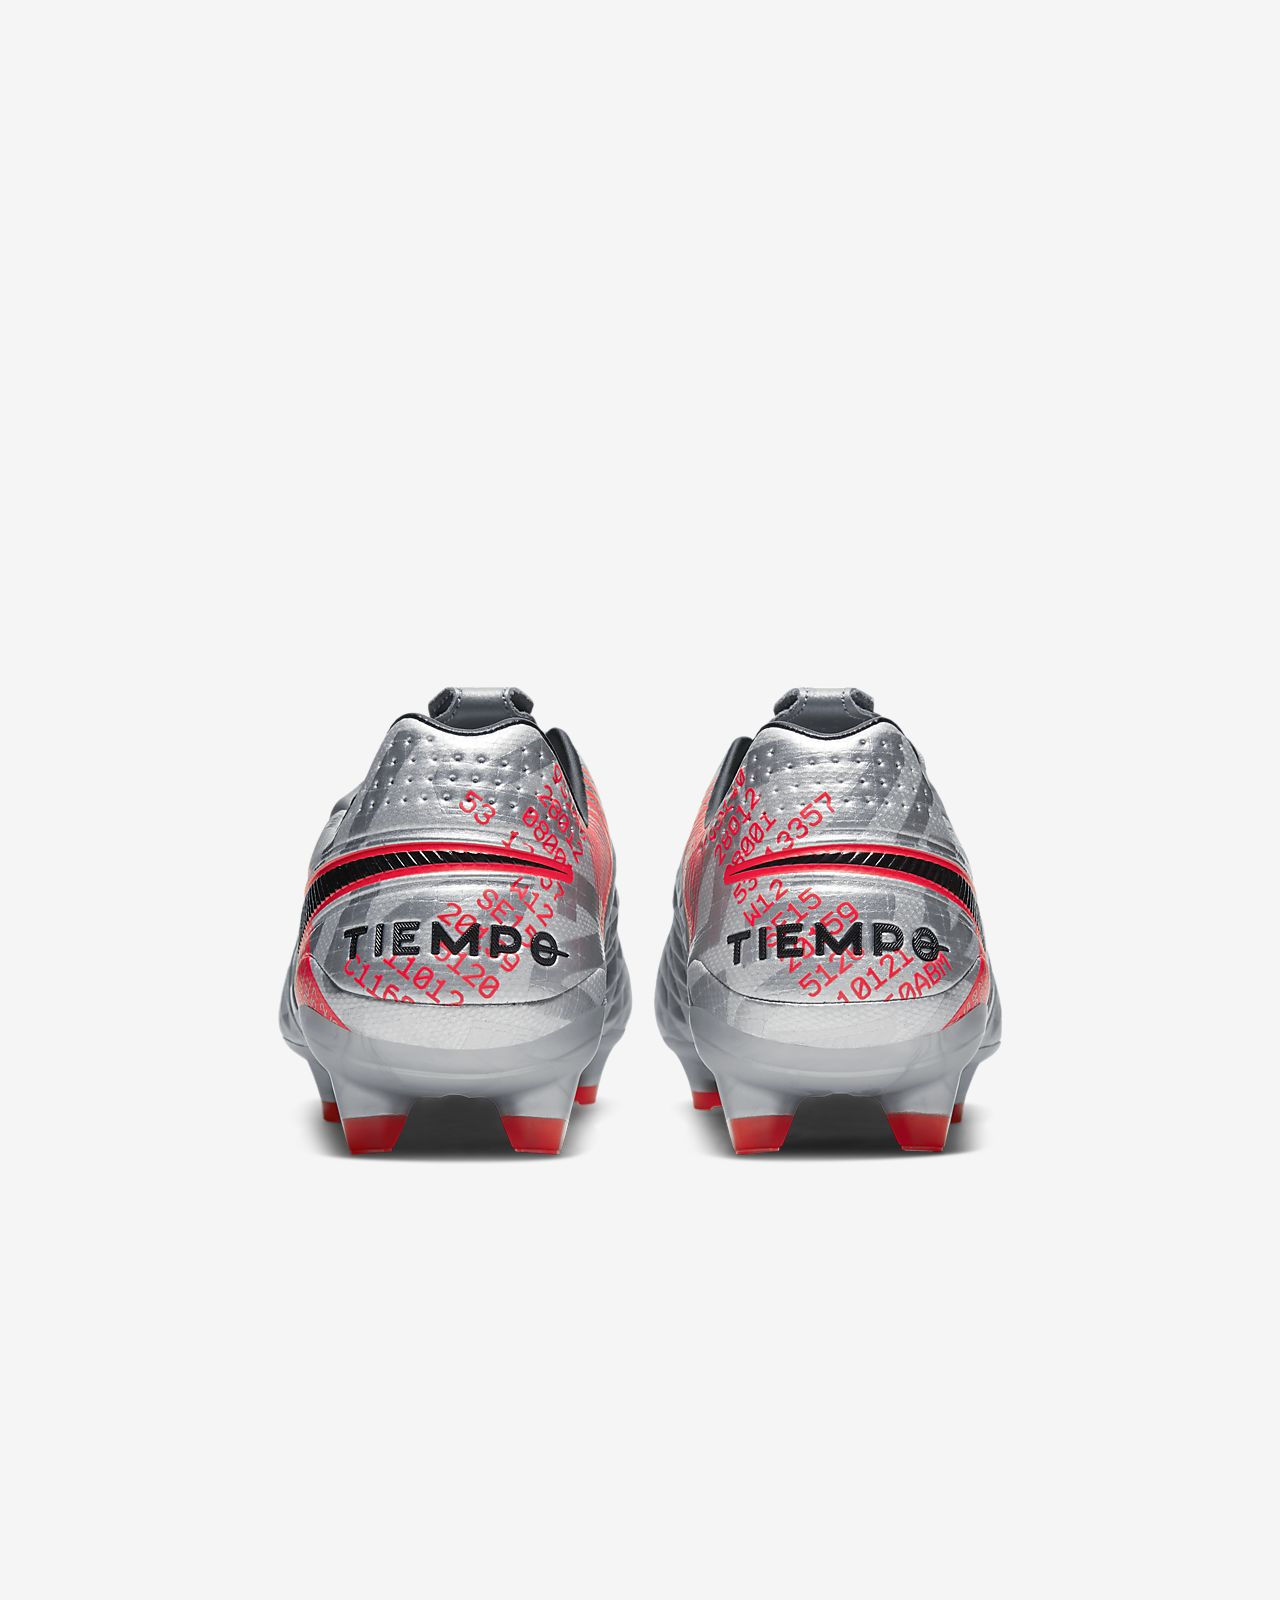 NextGen Nike Tiempo Legend 8 'Under the Radar' Boots.